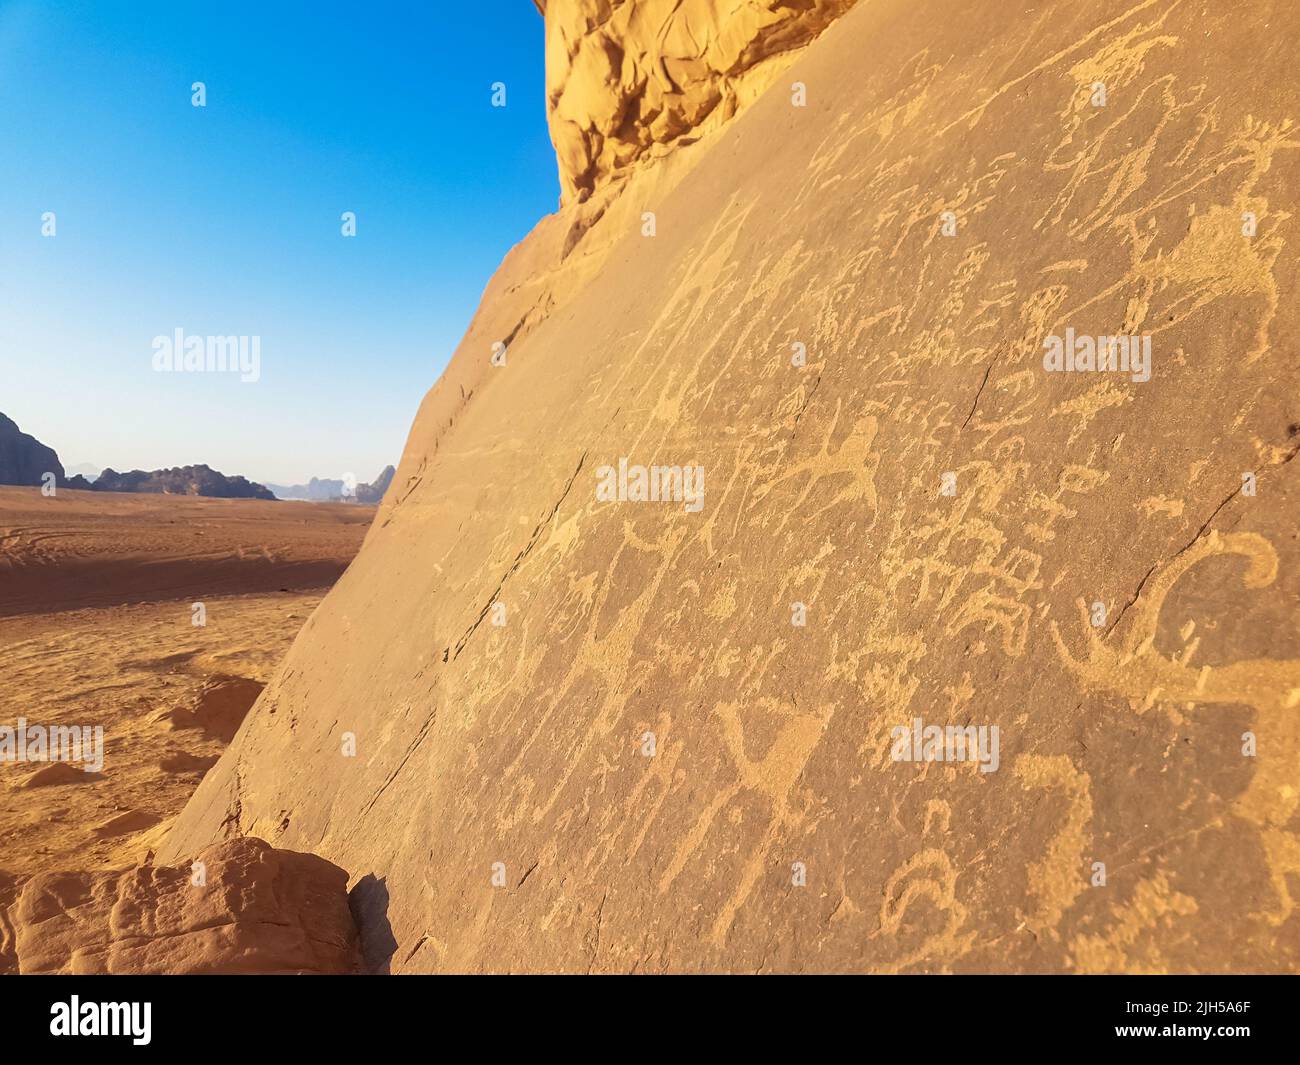 Sandsteinfelsen mit prähistorischer Kunst. Prähistorische Zivilisation hinterließ ihre primitiven Zeichnungen auf einer Kalksteinklippe in der Wadi Rum Wüste, Jordanien. Stockfoto